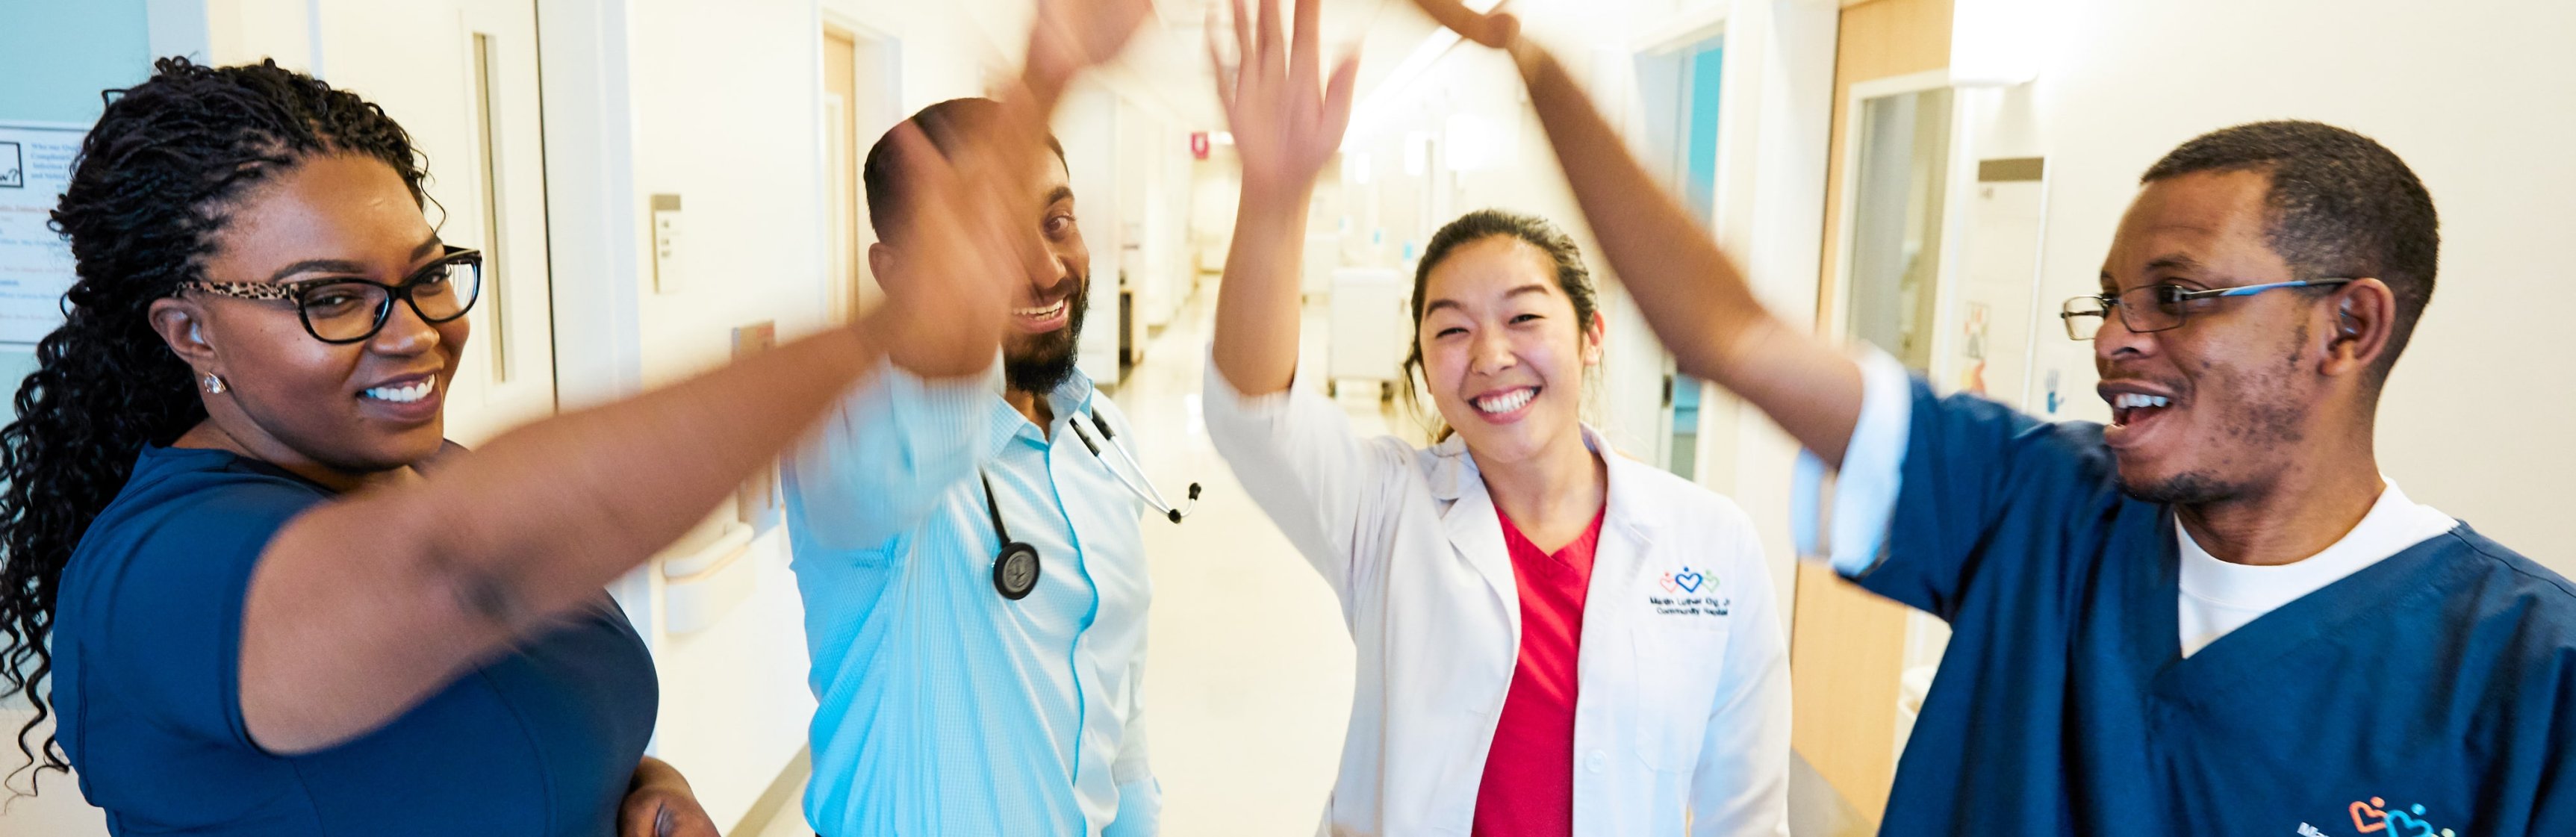 Un grupo diverso de cuatro médicos y enfermeros sonriendo y chocando los cinco